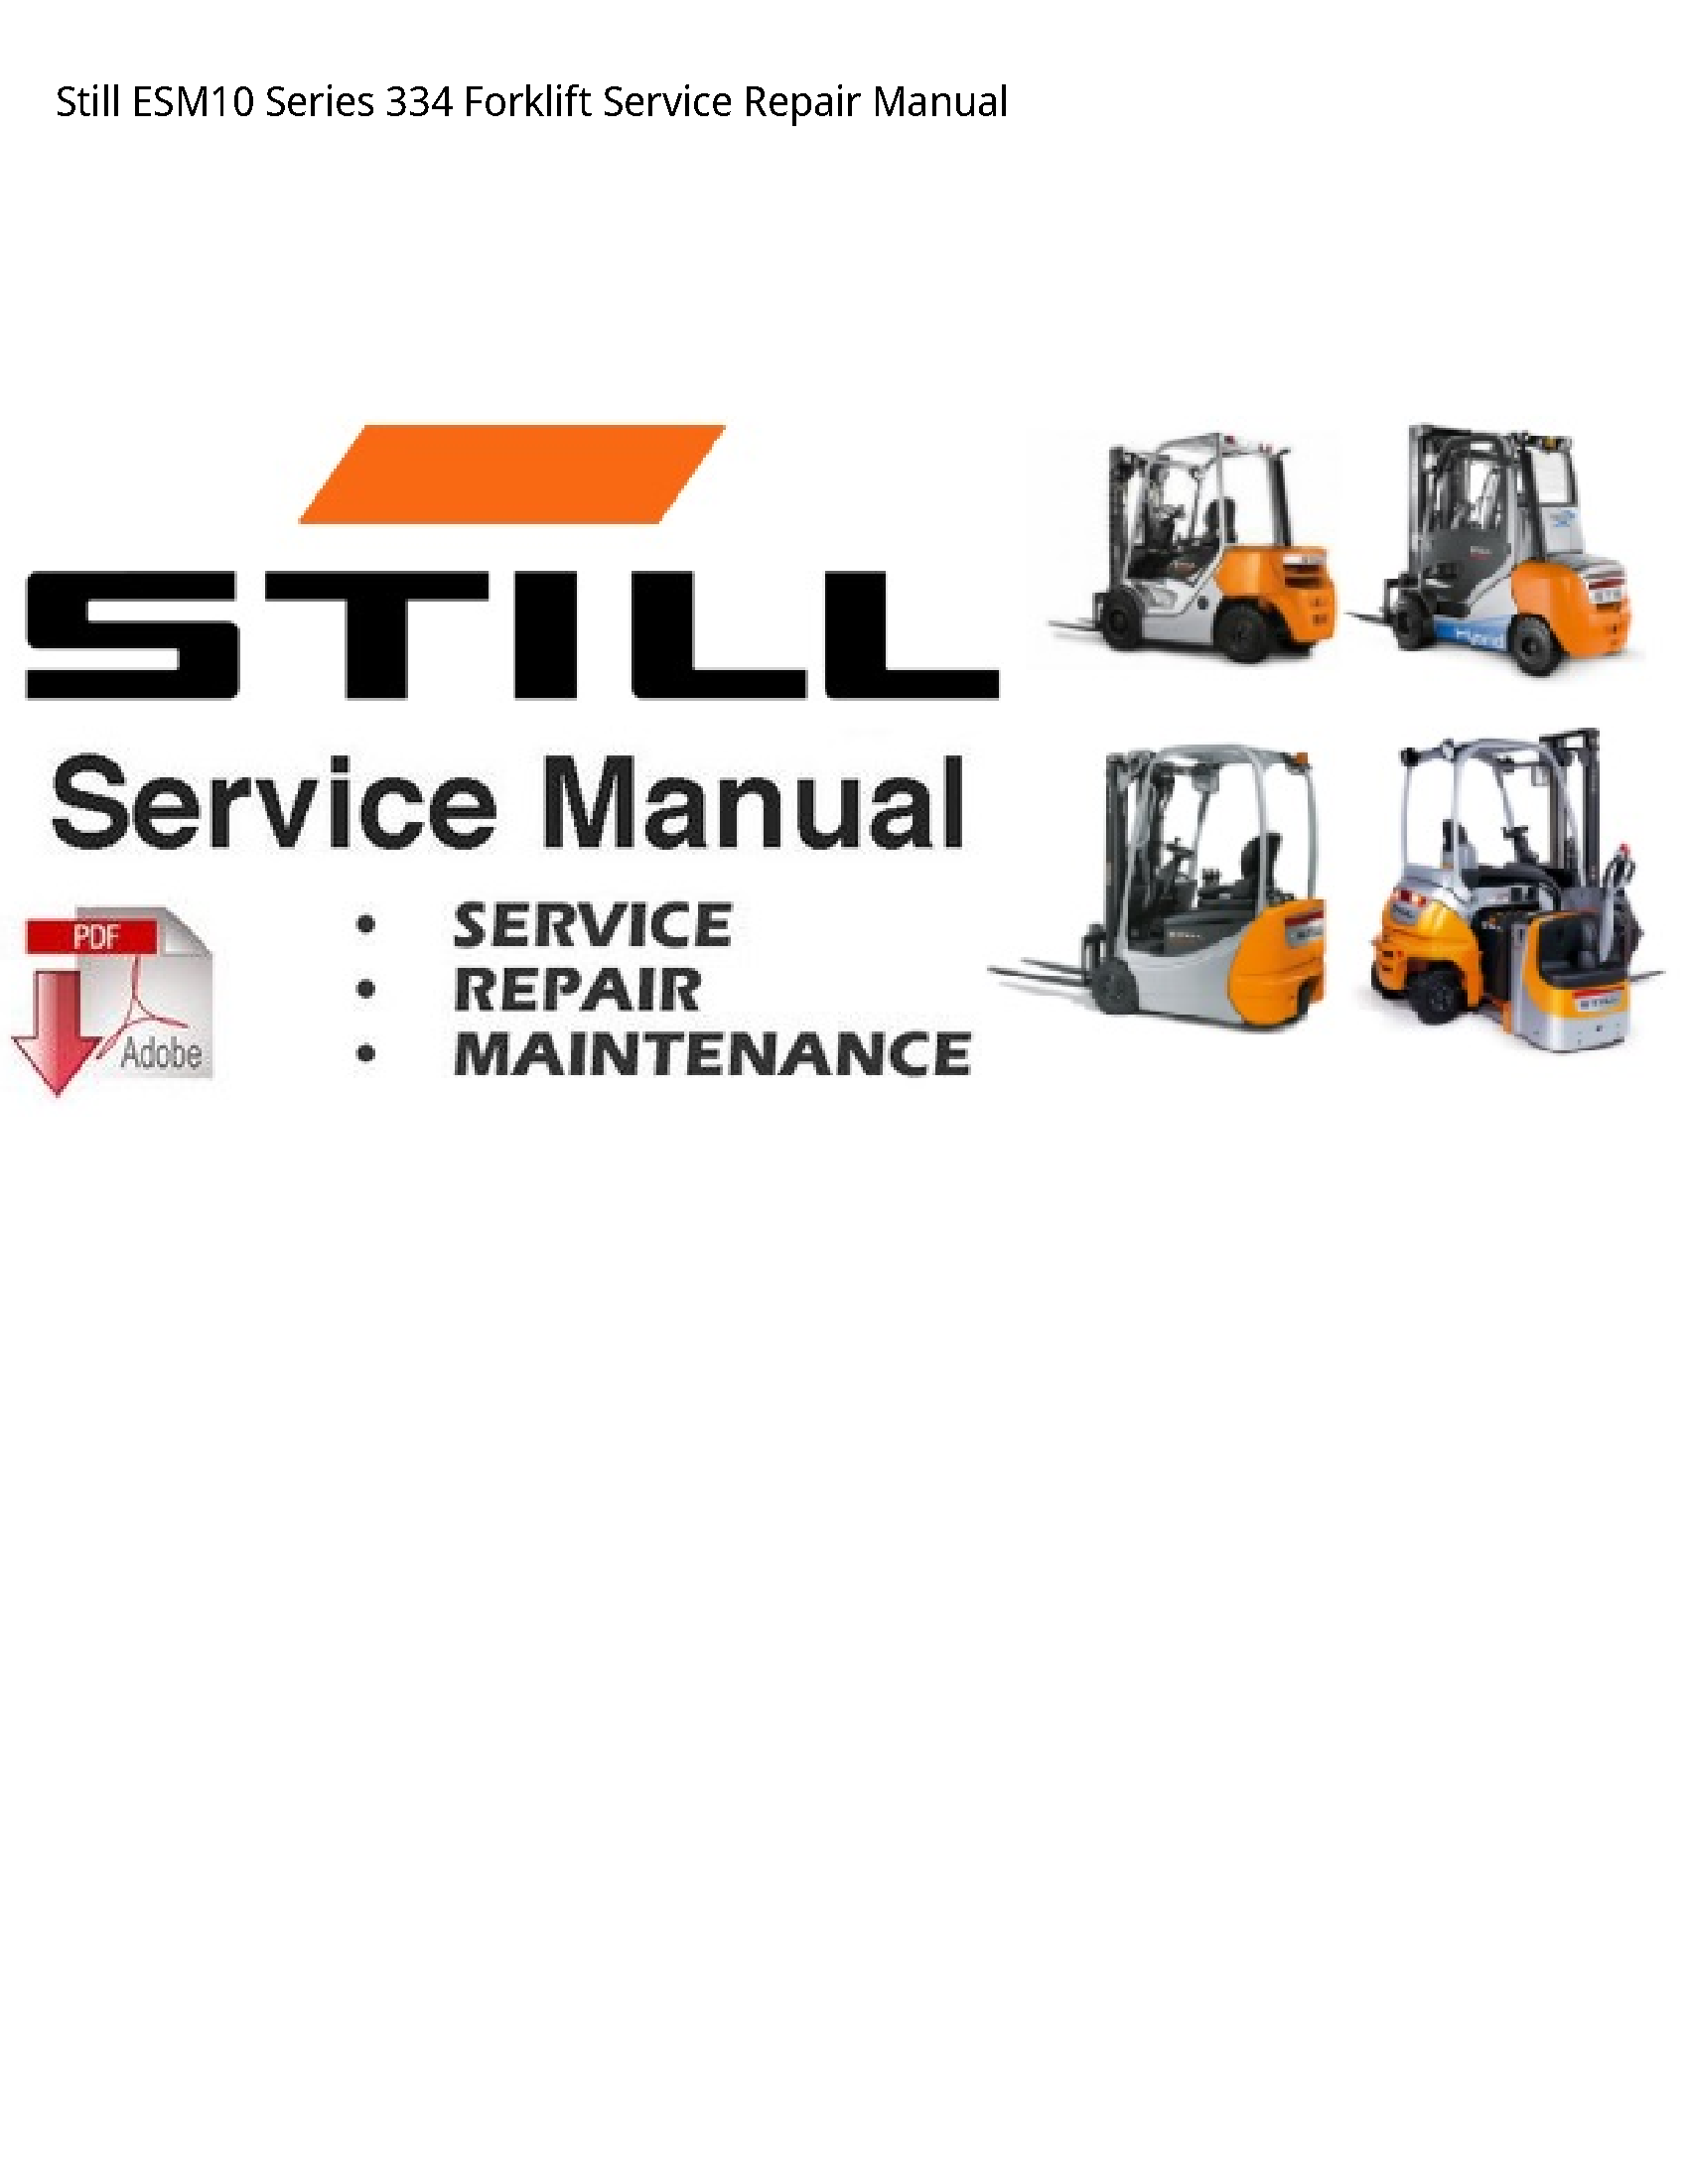 Still ESM10 Series Forklift manual